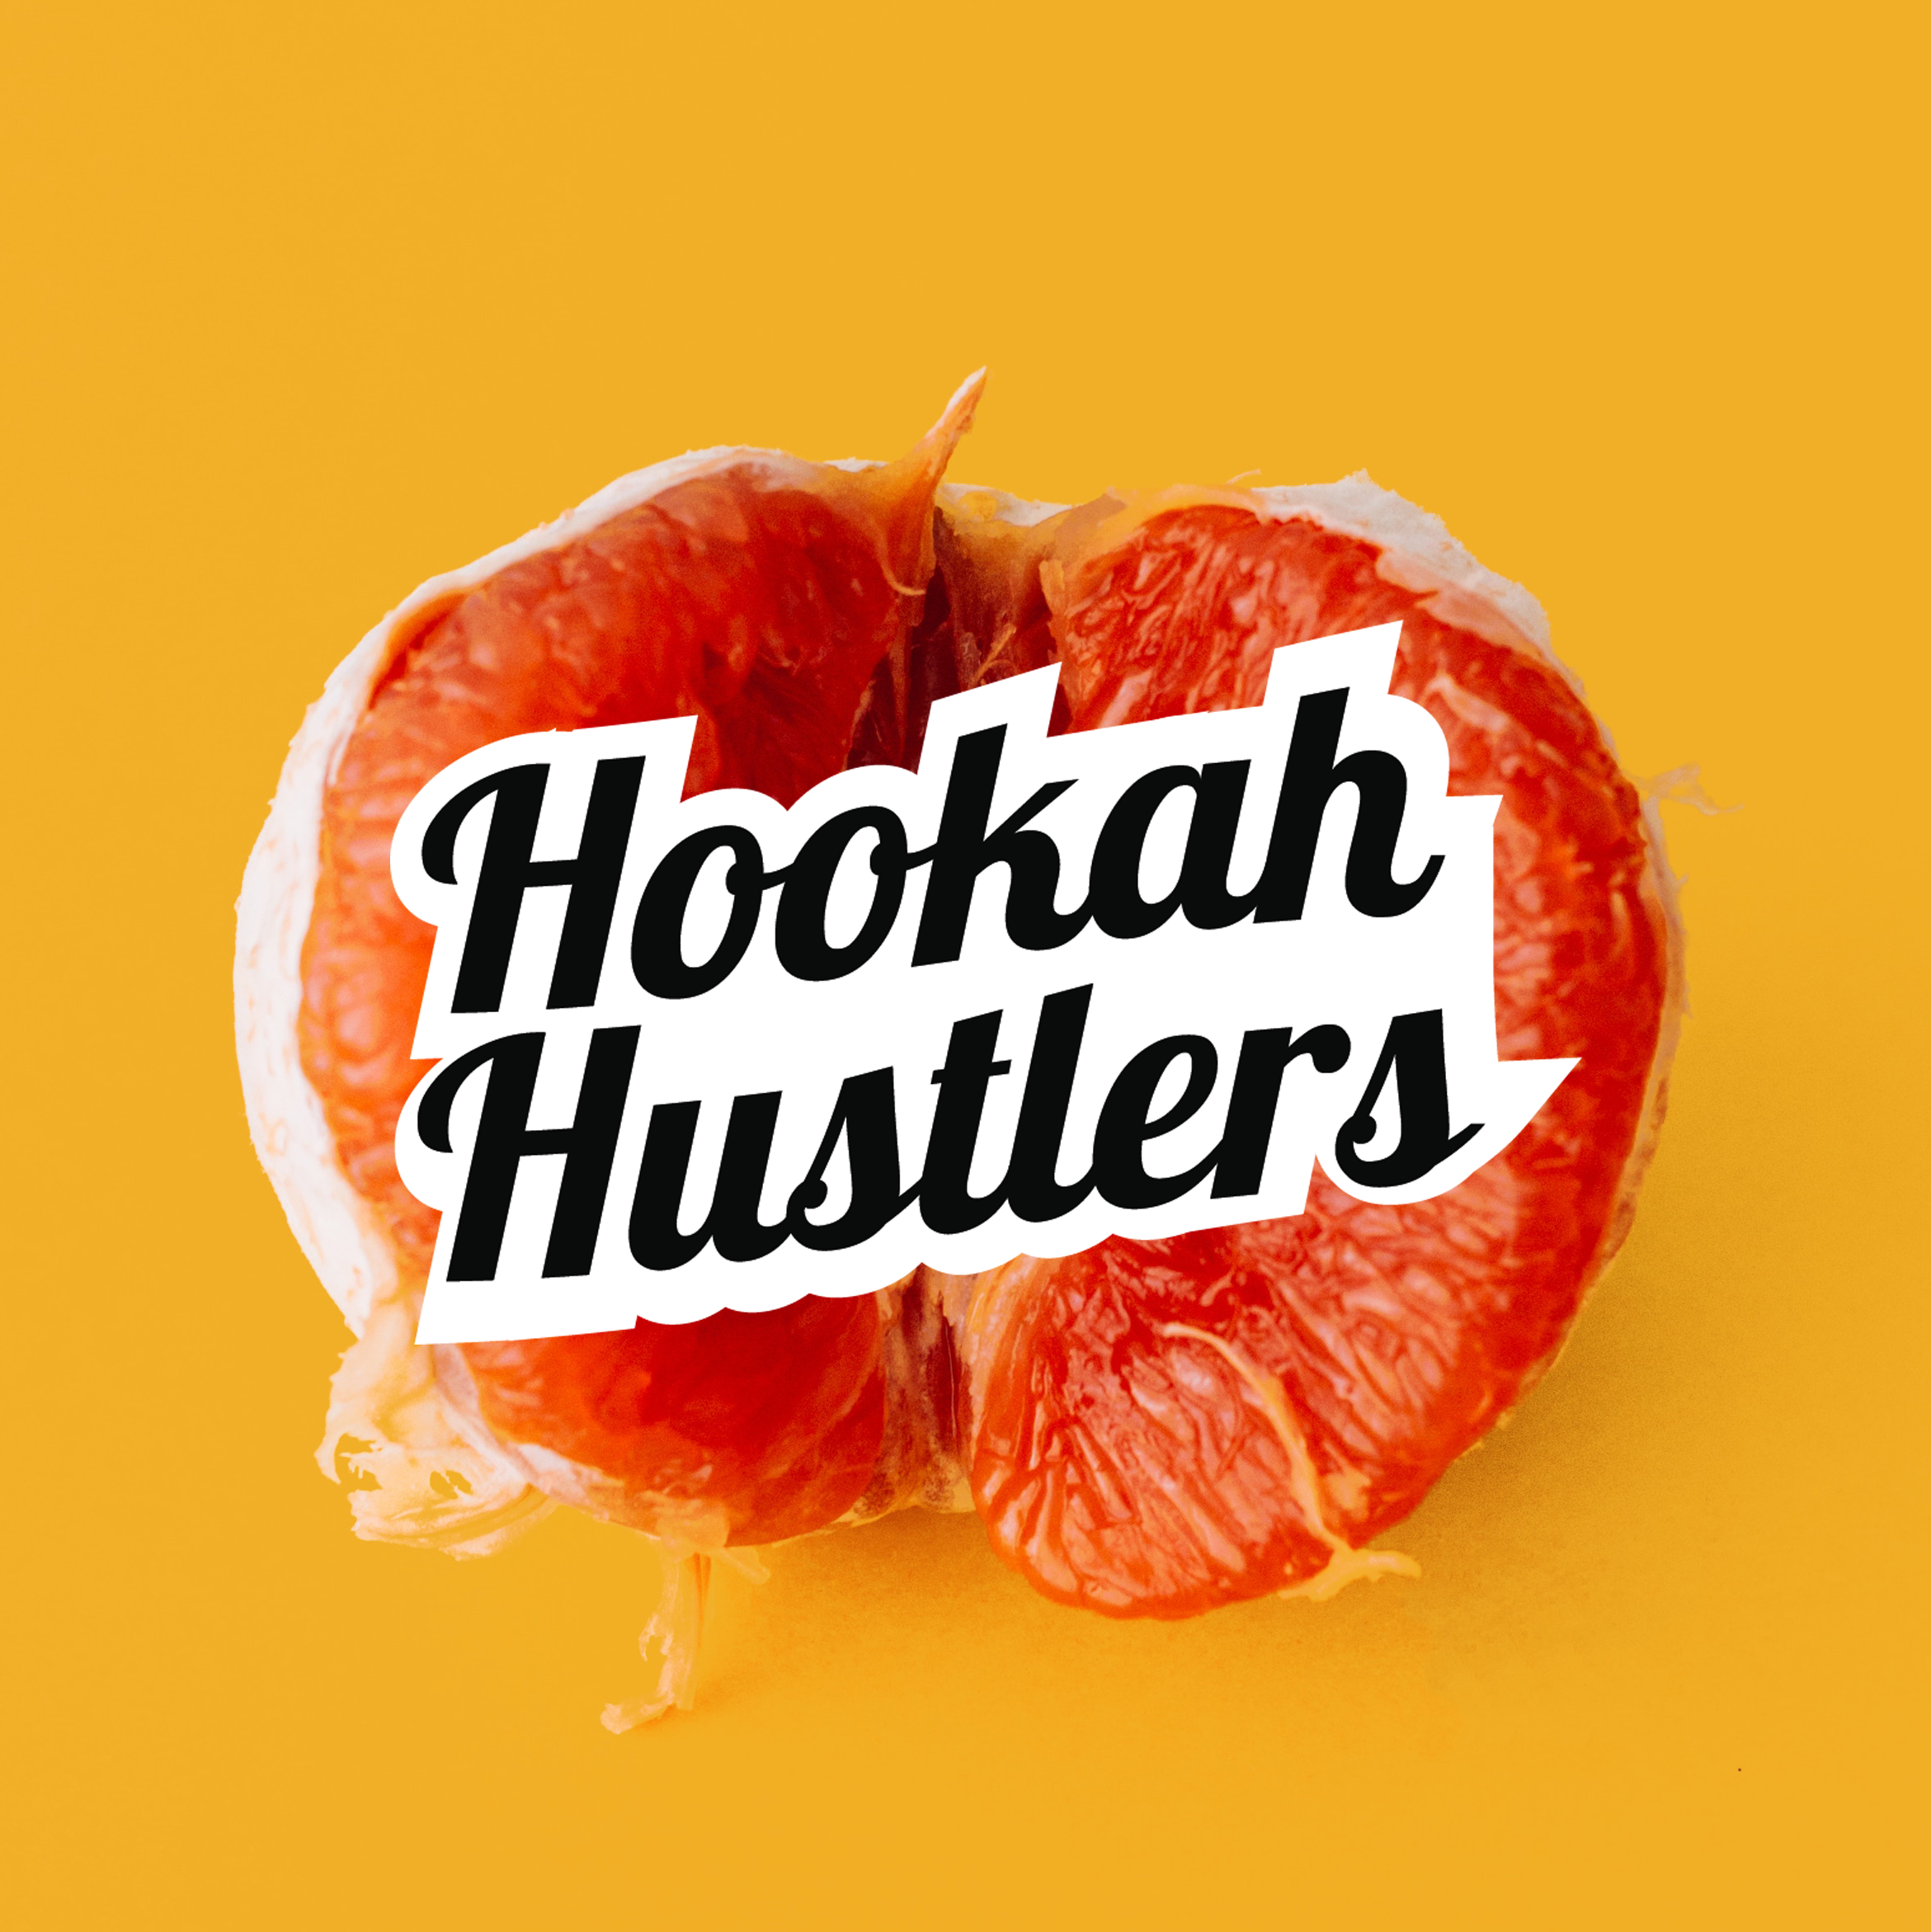 hookah hustlers